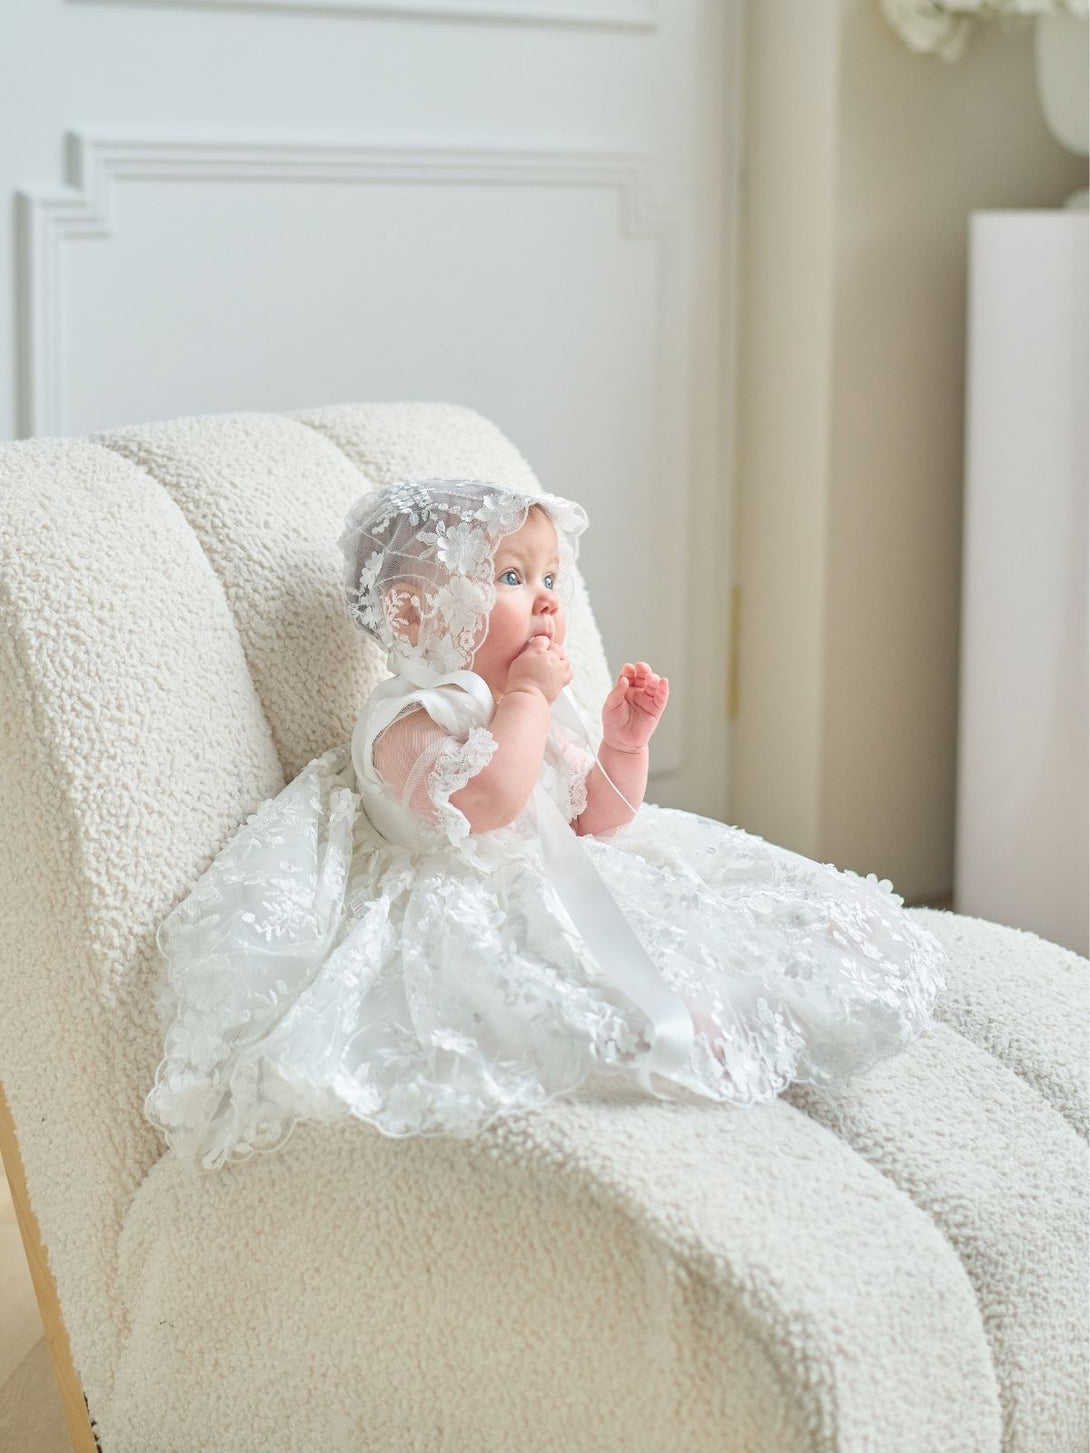 Baby Baptism Dresses Flower Girl Wedding Dress